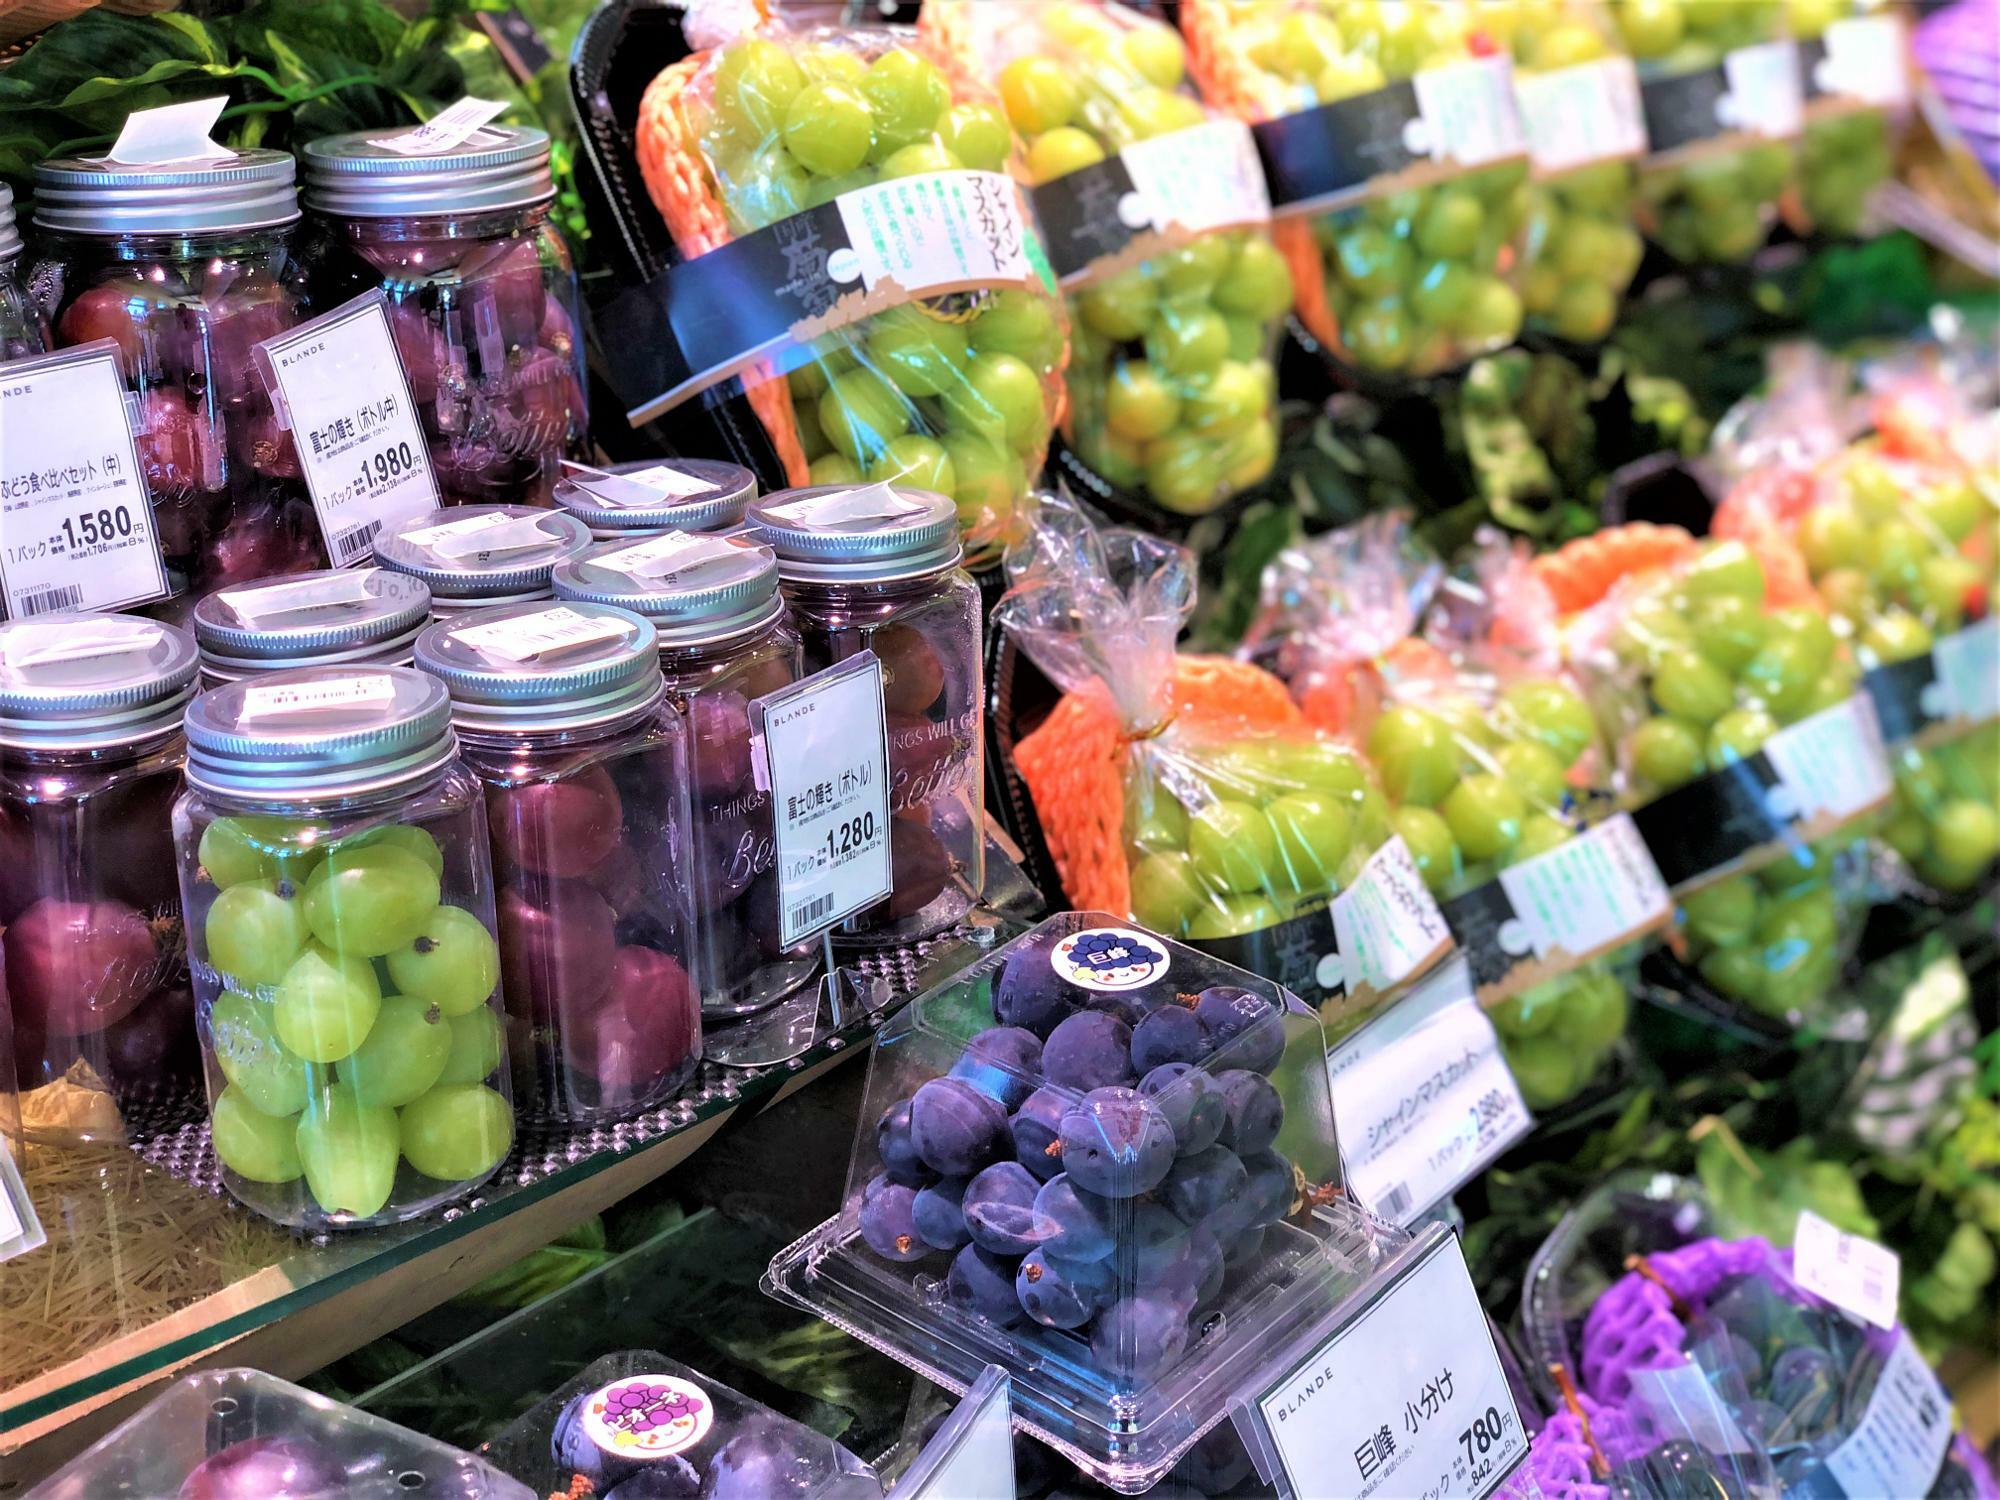 BLANDE（ブランデ）さんの青果売り場では、常に種類豊富で新鮮なフルーツが並んでいます。